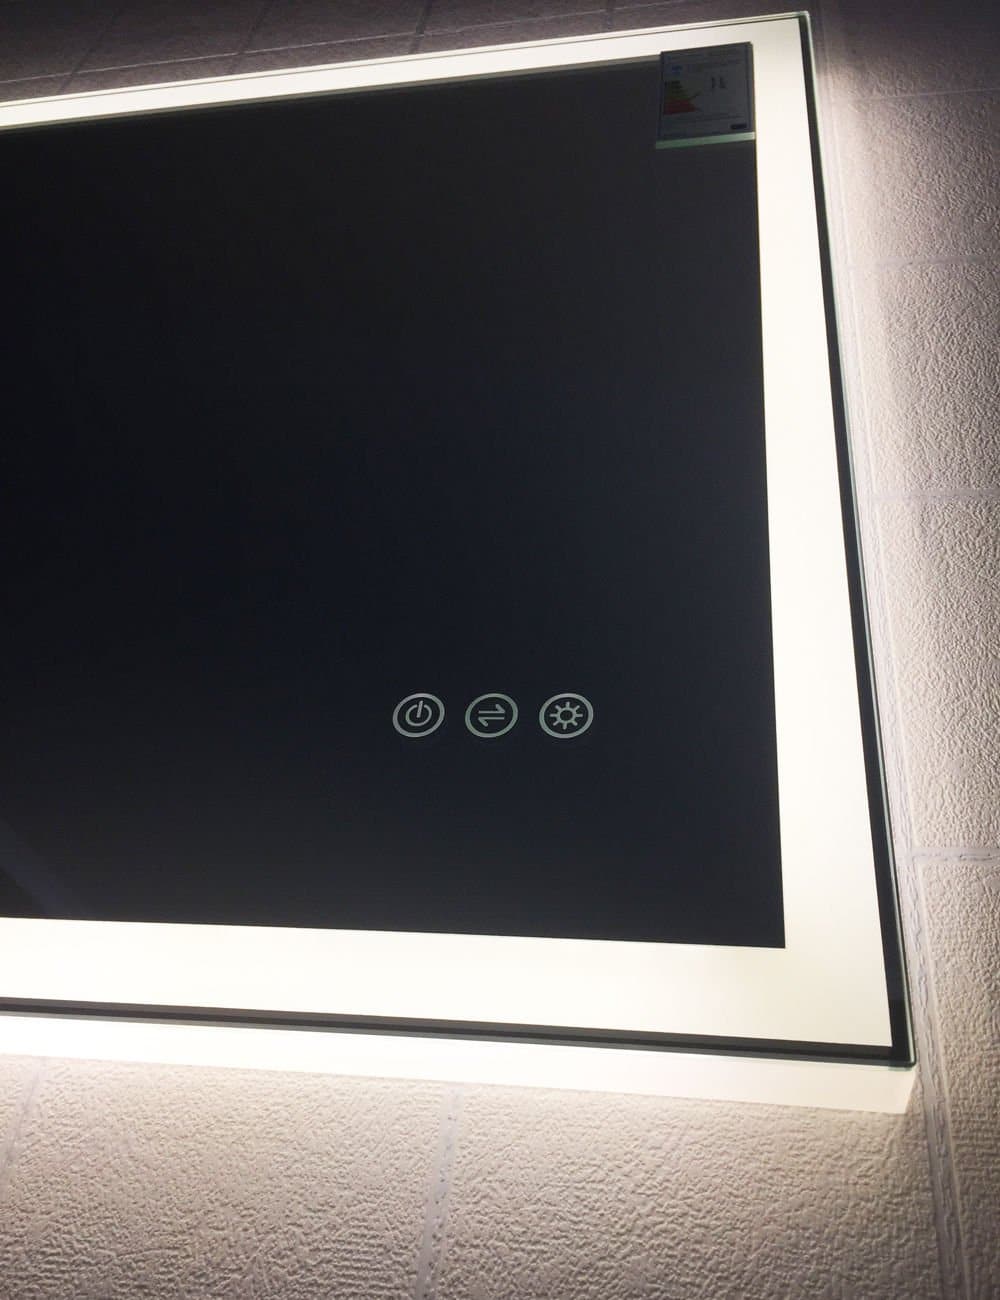 De 3 touchknoppen bevinden zich aan de rechter onderzijde van de spiegel